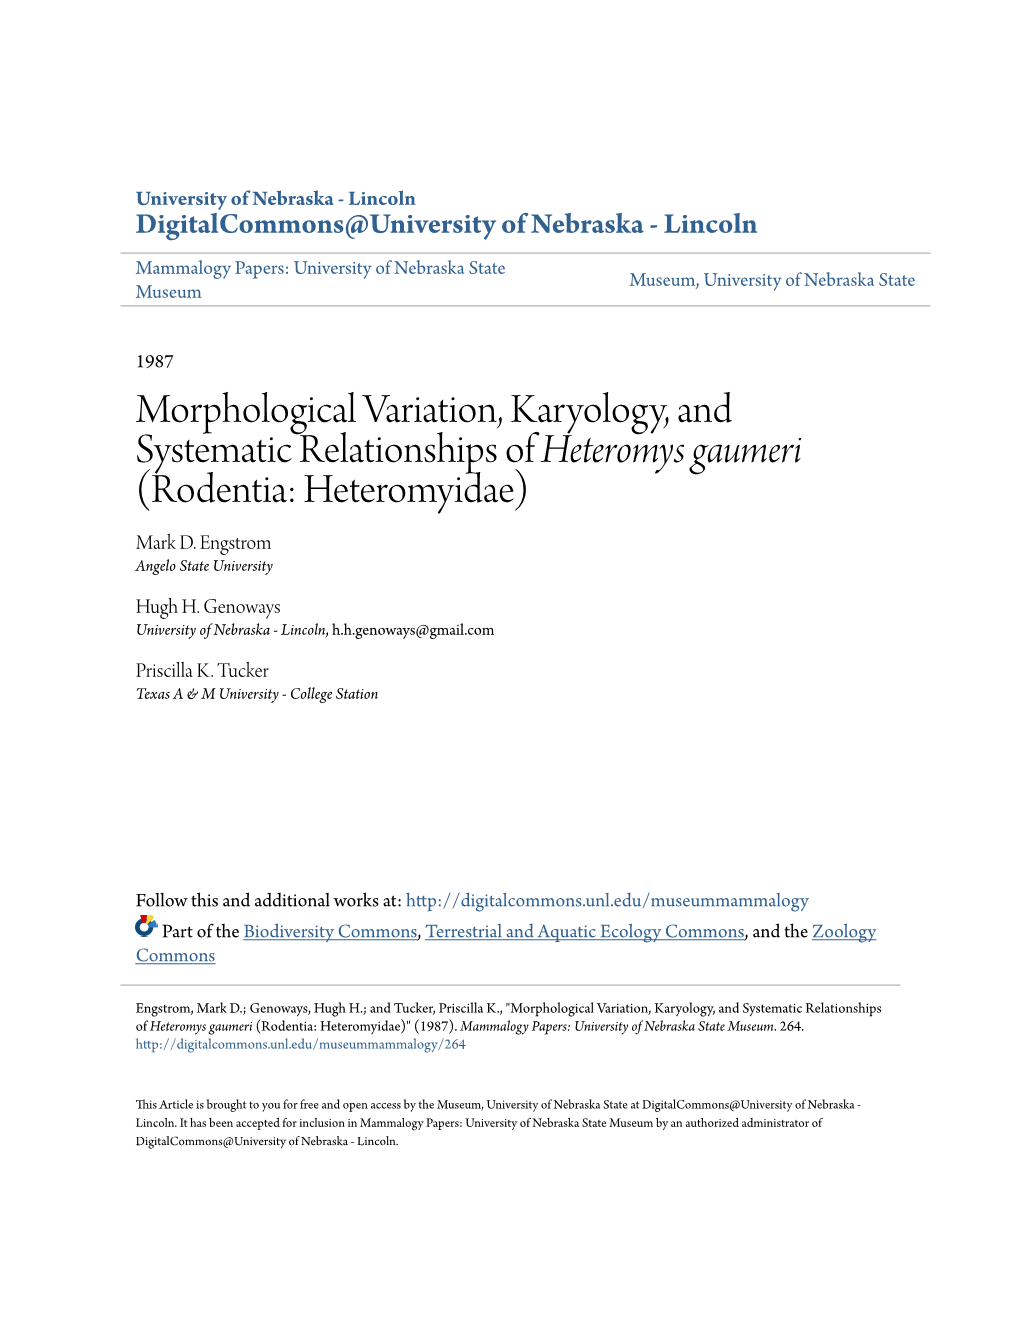 Morphological Variation, Karyology, and Systematic Relationships of Heteromys Gaumeri (Rodentia: Heteromyidae) Mark D